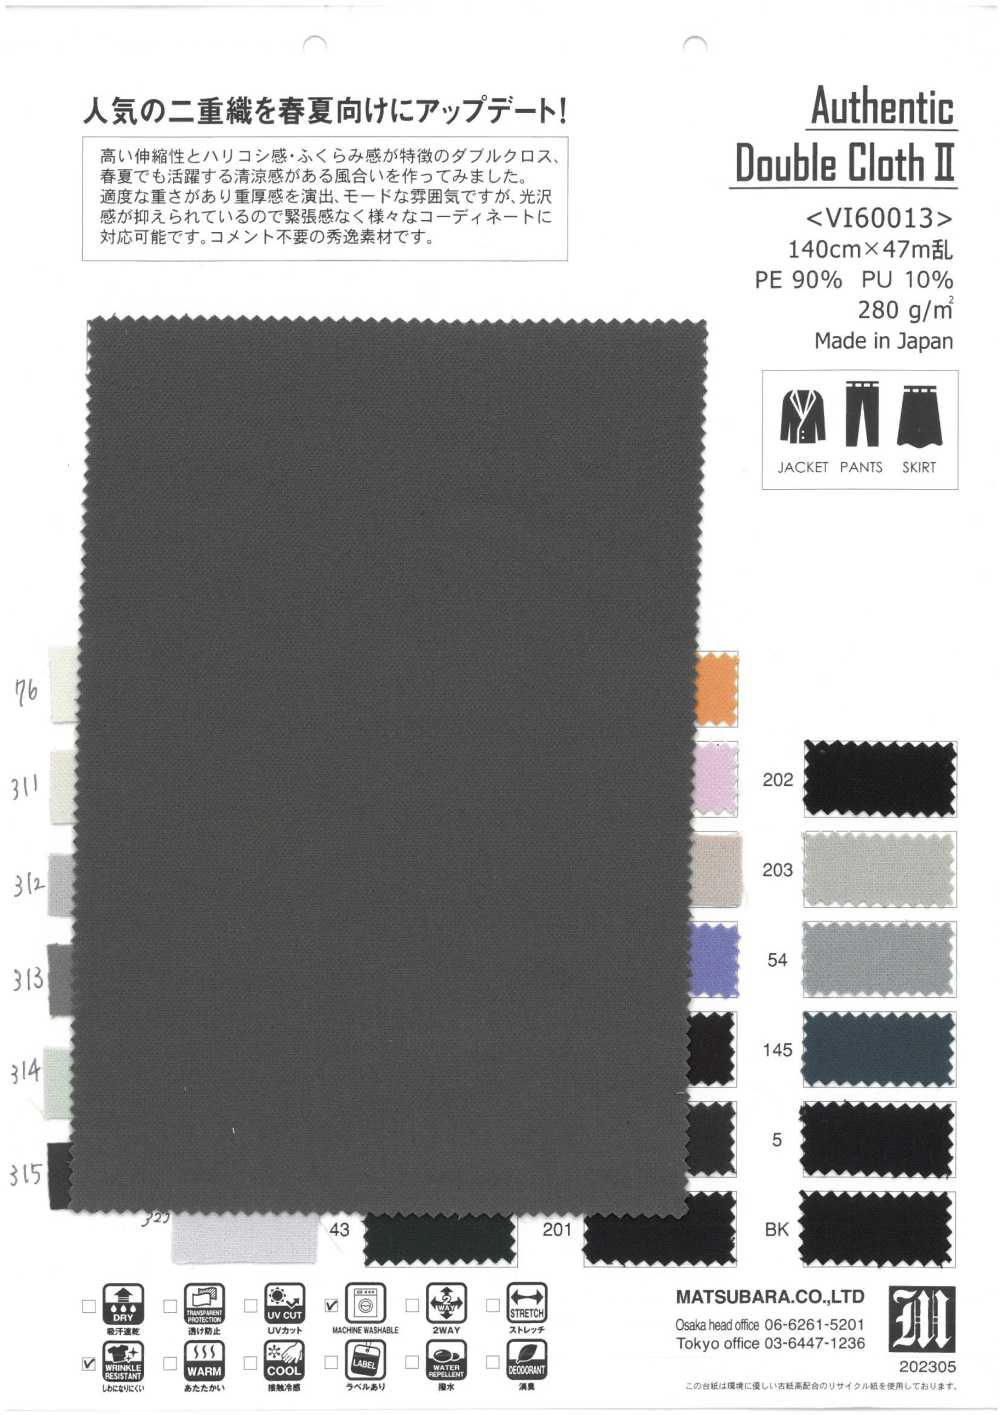 VI60013 Authentisches Doppeltuch Ⅱ[Textilgewebe] Matsubara